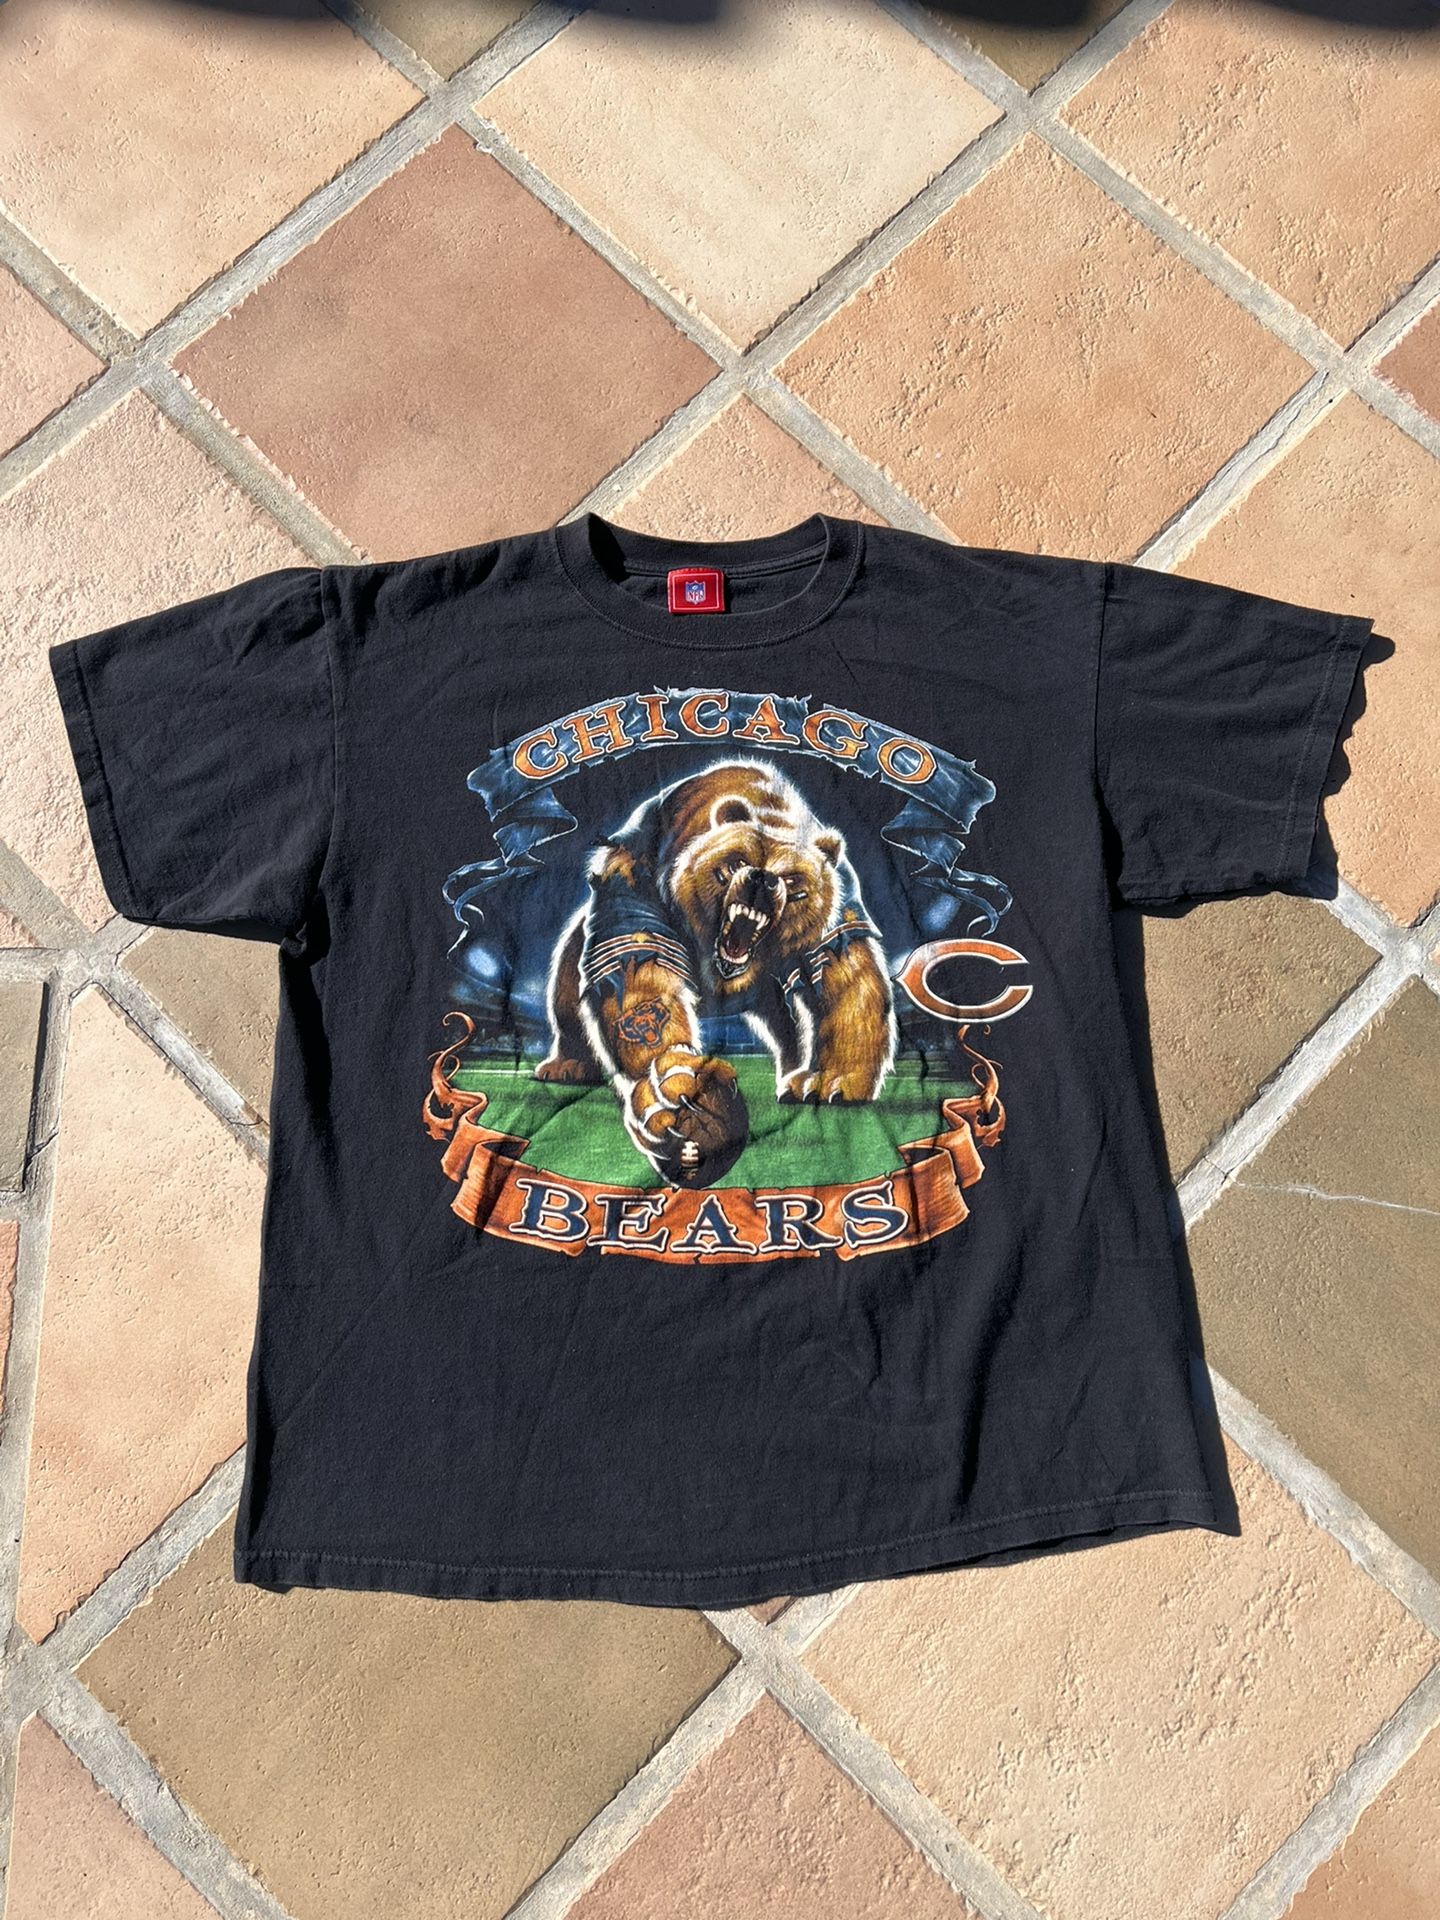 Vintage 90s Beastie Boys Swearshirt! for Sale in Louisville, KY - OfferUp